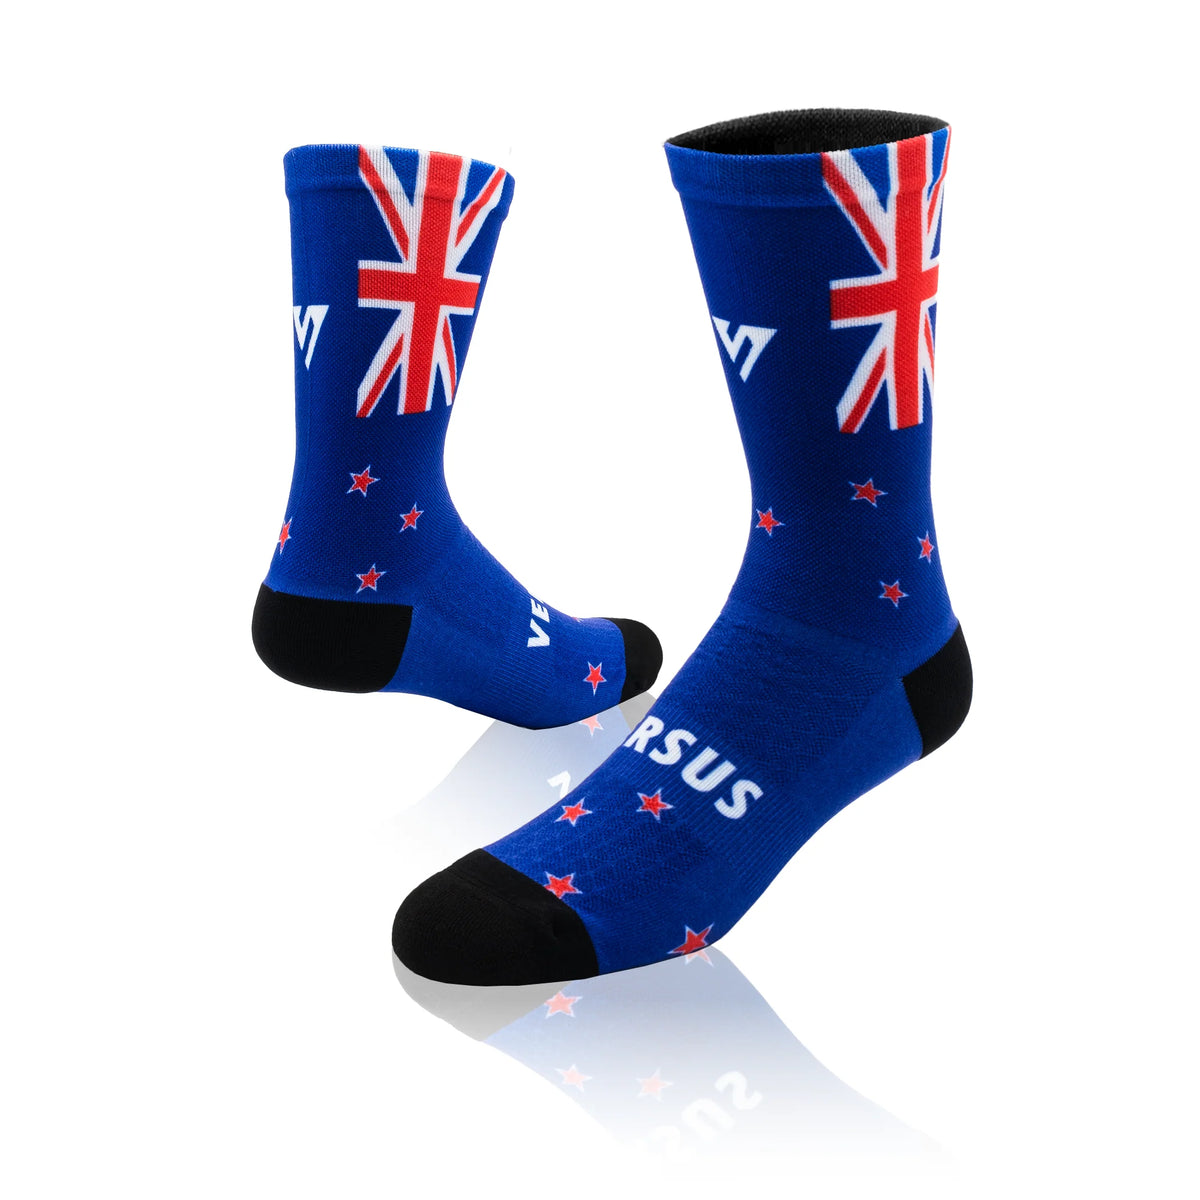 Versus New Zealand Elite Socks